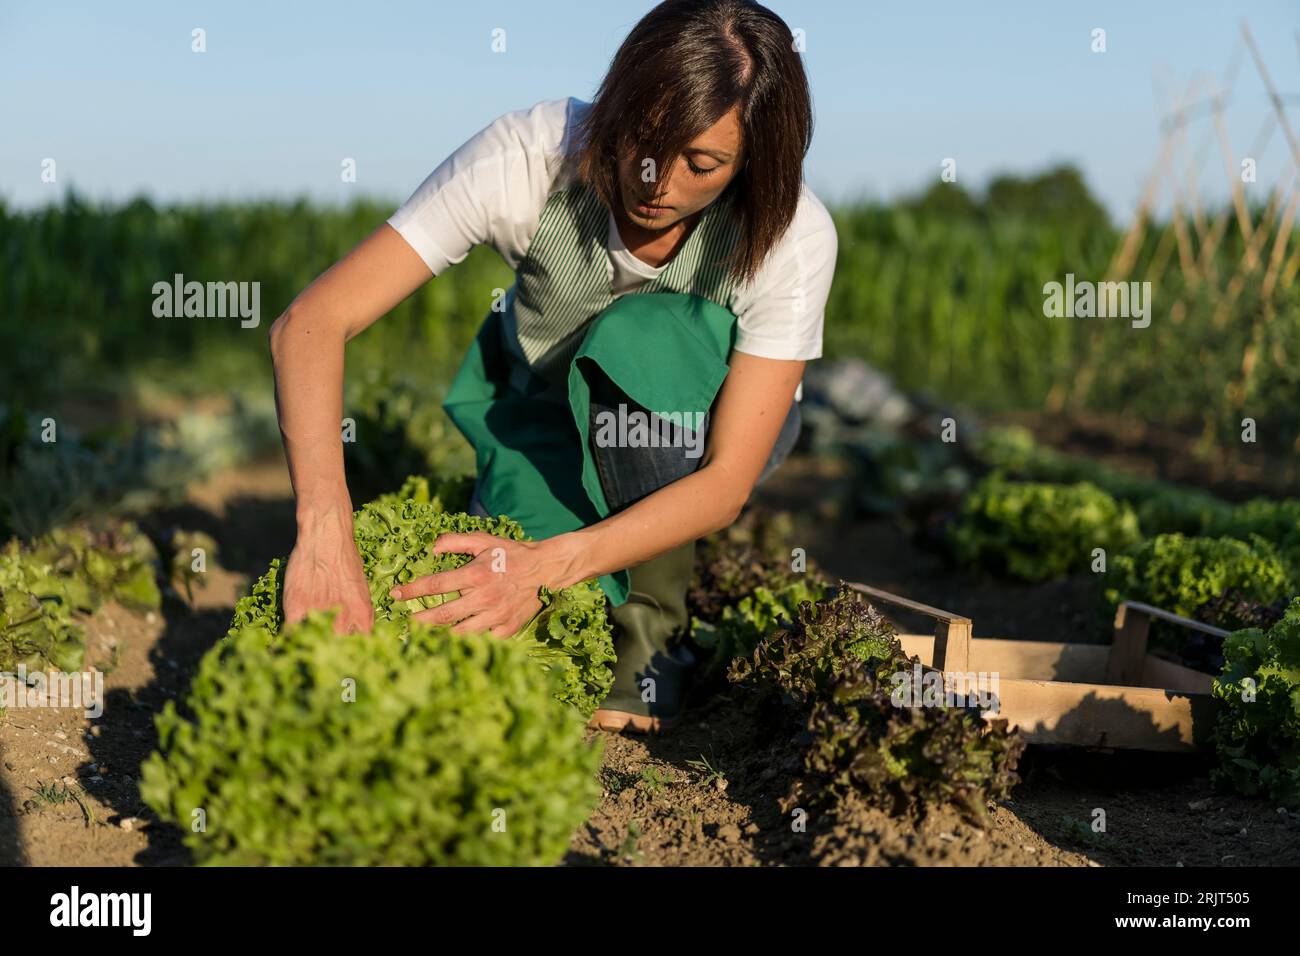 Woman working in her vegetable garden Stock Photo